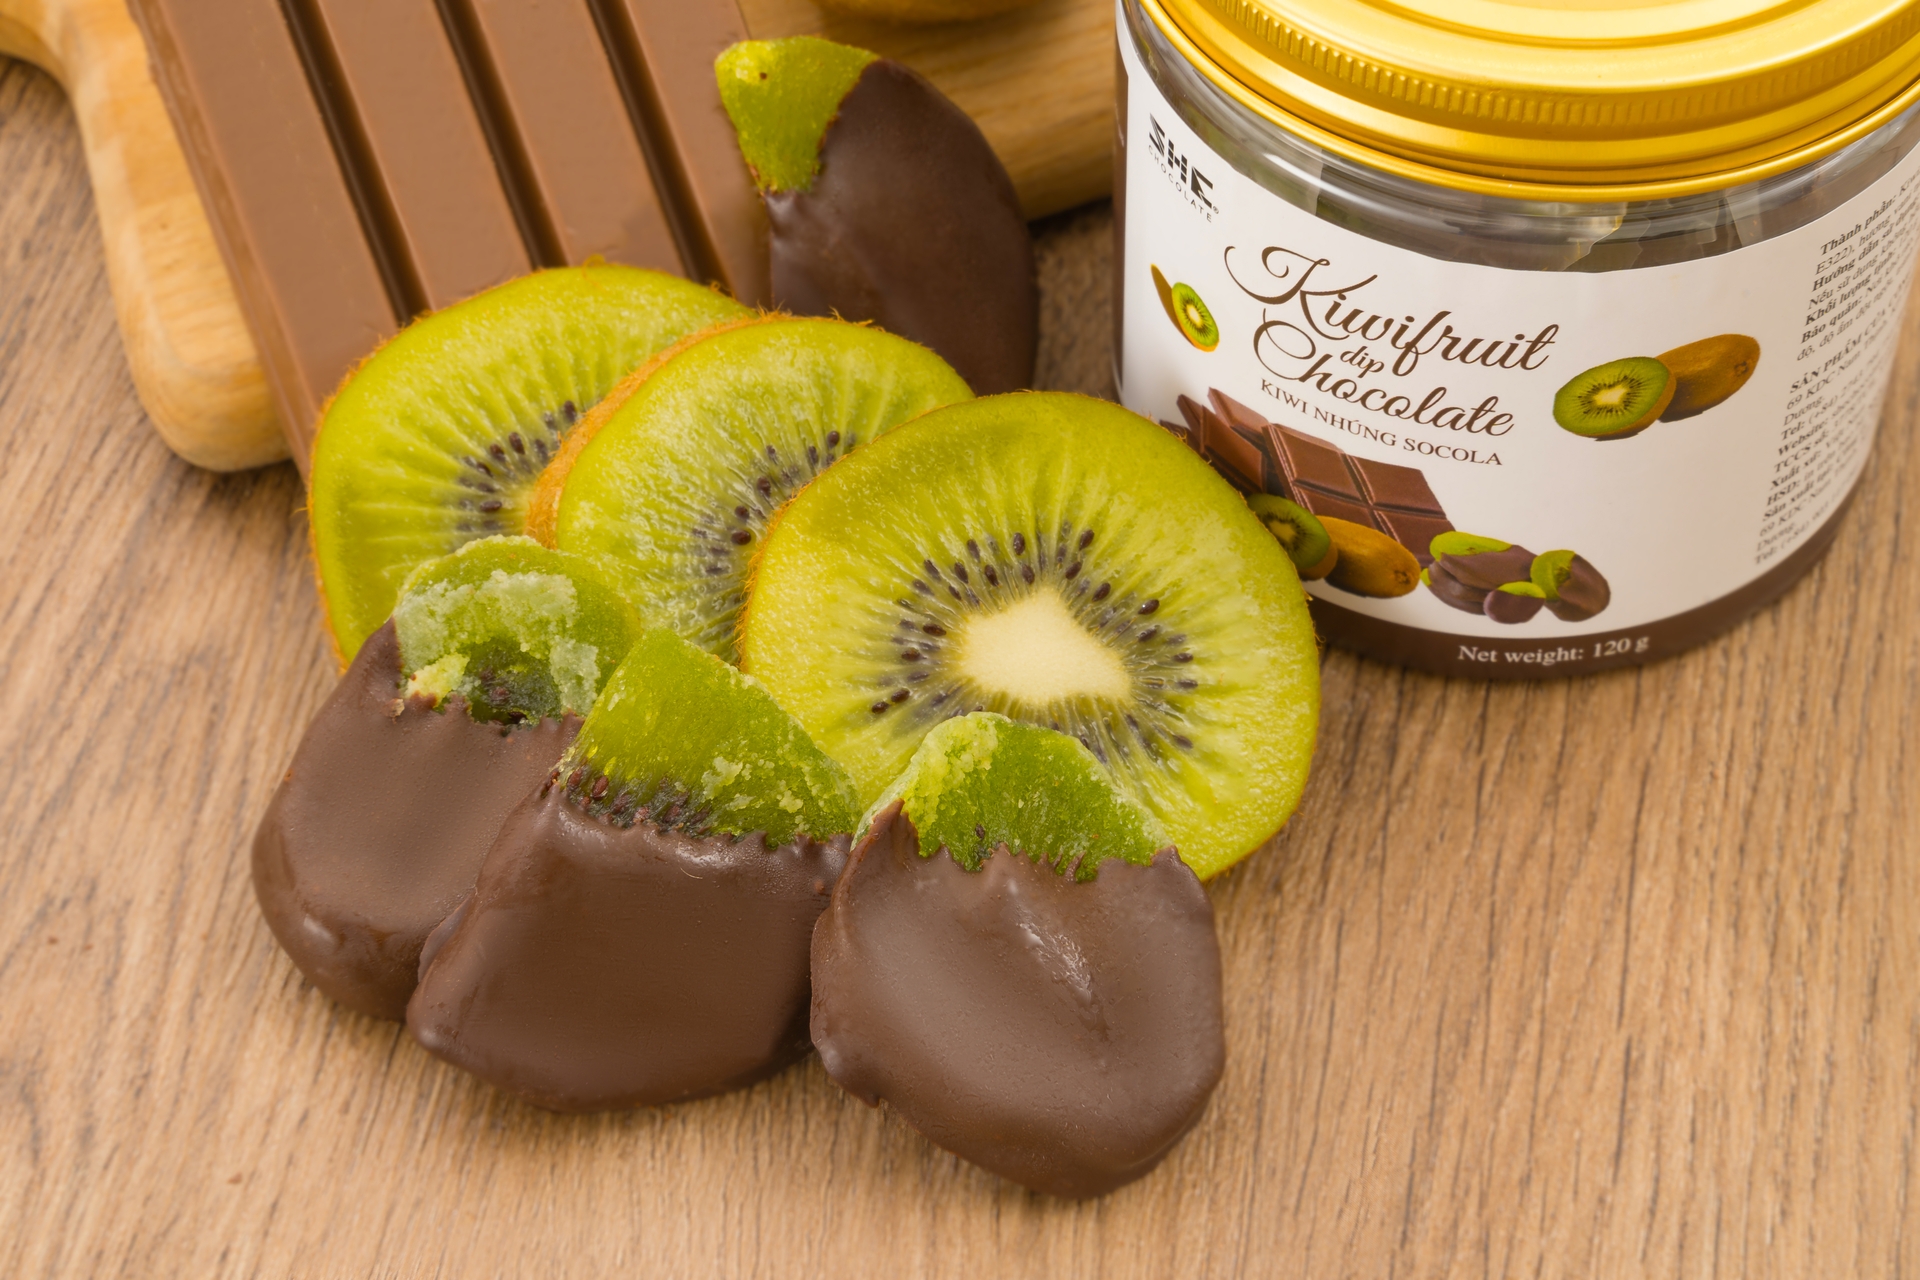 Kiwi nhúng Socola - SHE Chocolate - 120g Hũ pet - Đa dạng vị giác, tốt cho sức khỏe. Quà tặng người thân, dịp lễ, thích hợp ăn vặt